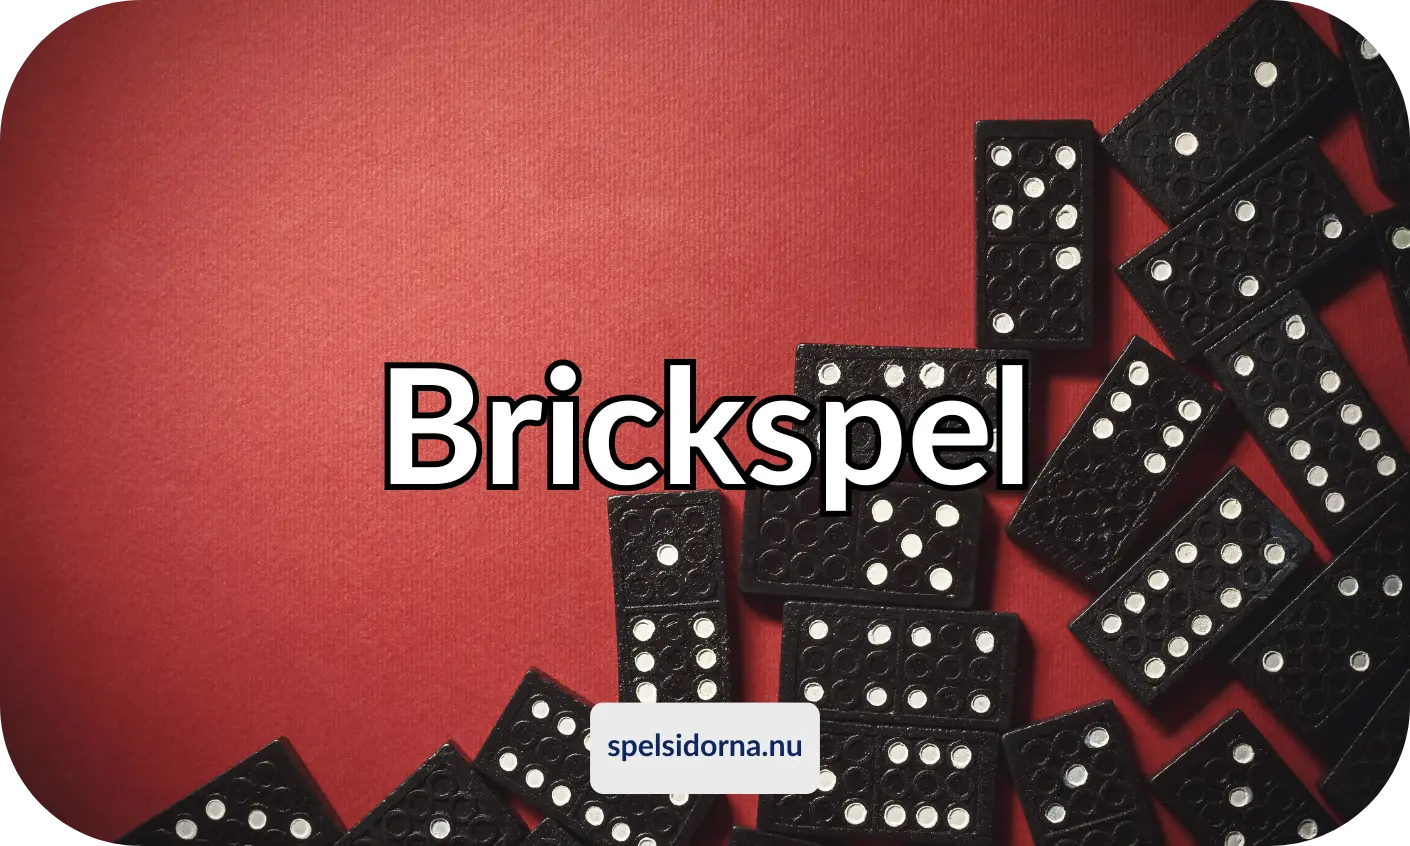 Brickspel